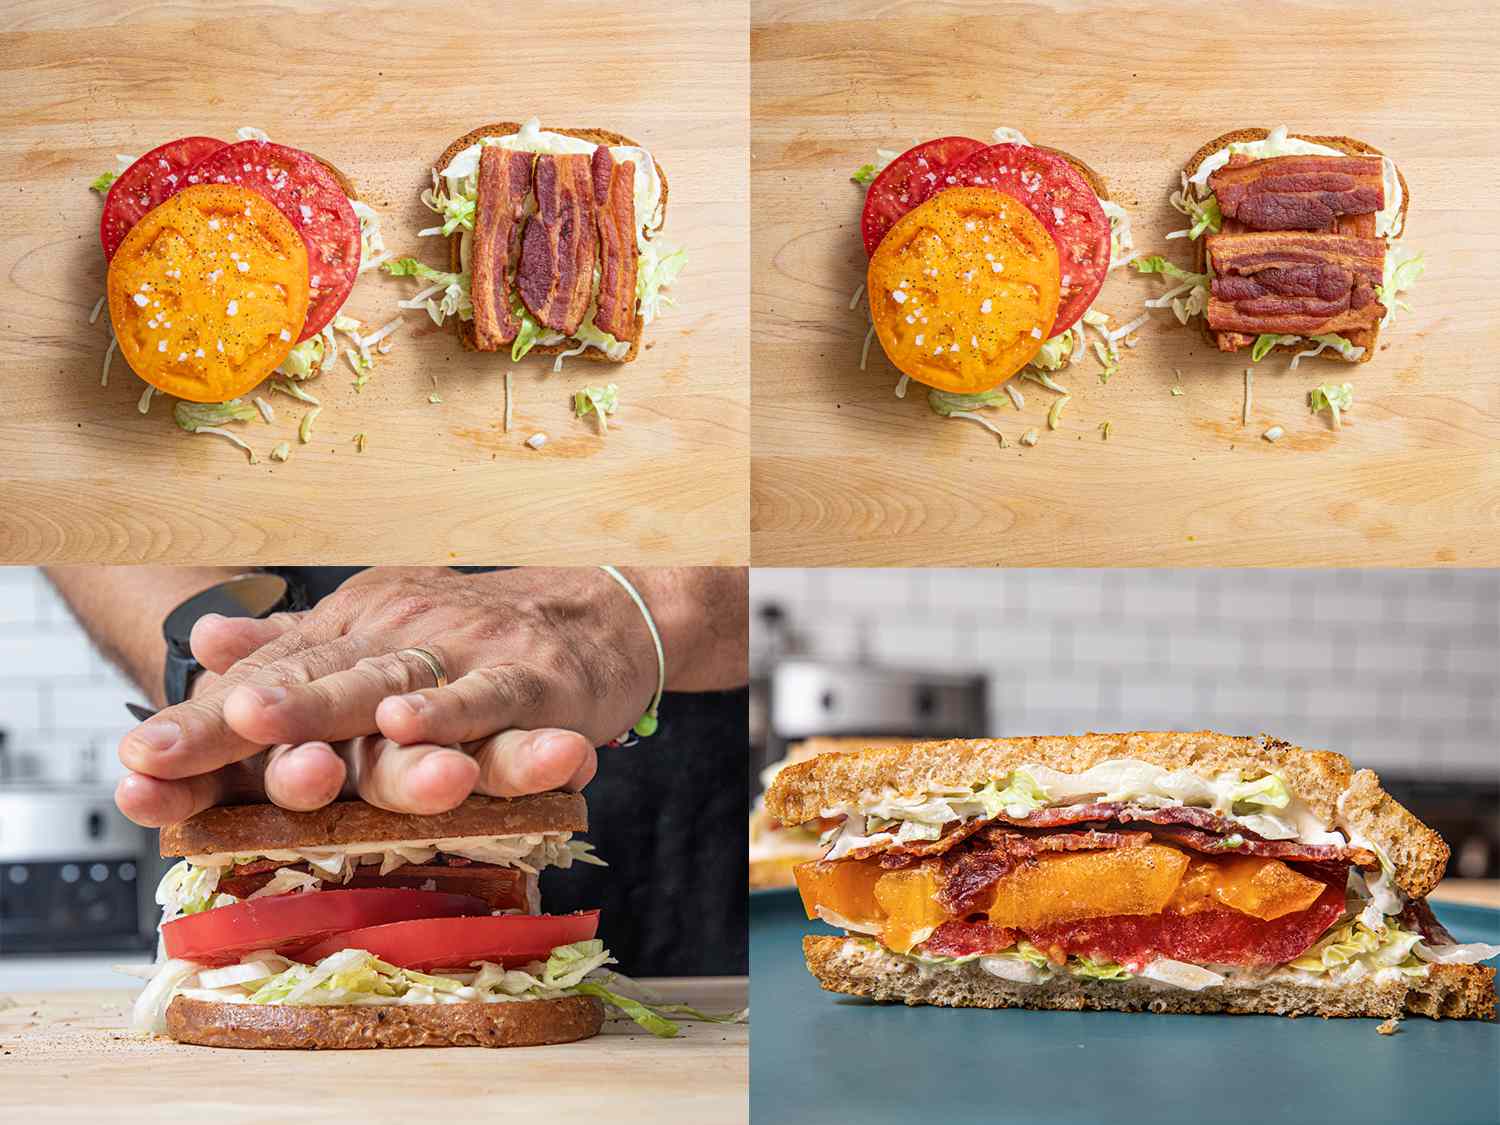 四个图像拼贴。左上:三明治两面的俯视图，一边是咸番茄，另一边是三条培根。右上:打开的三明治里又加了三片培根。左下:双手按下完成的三明治。右下:三明治的横截面